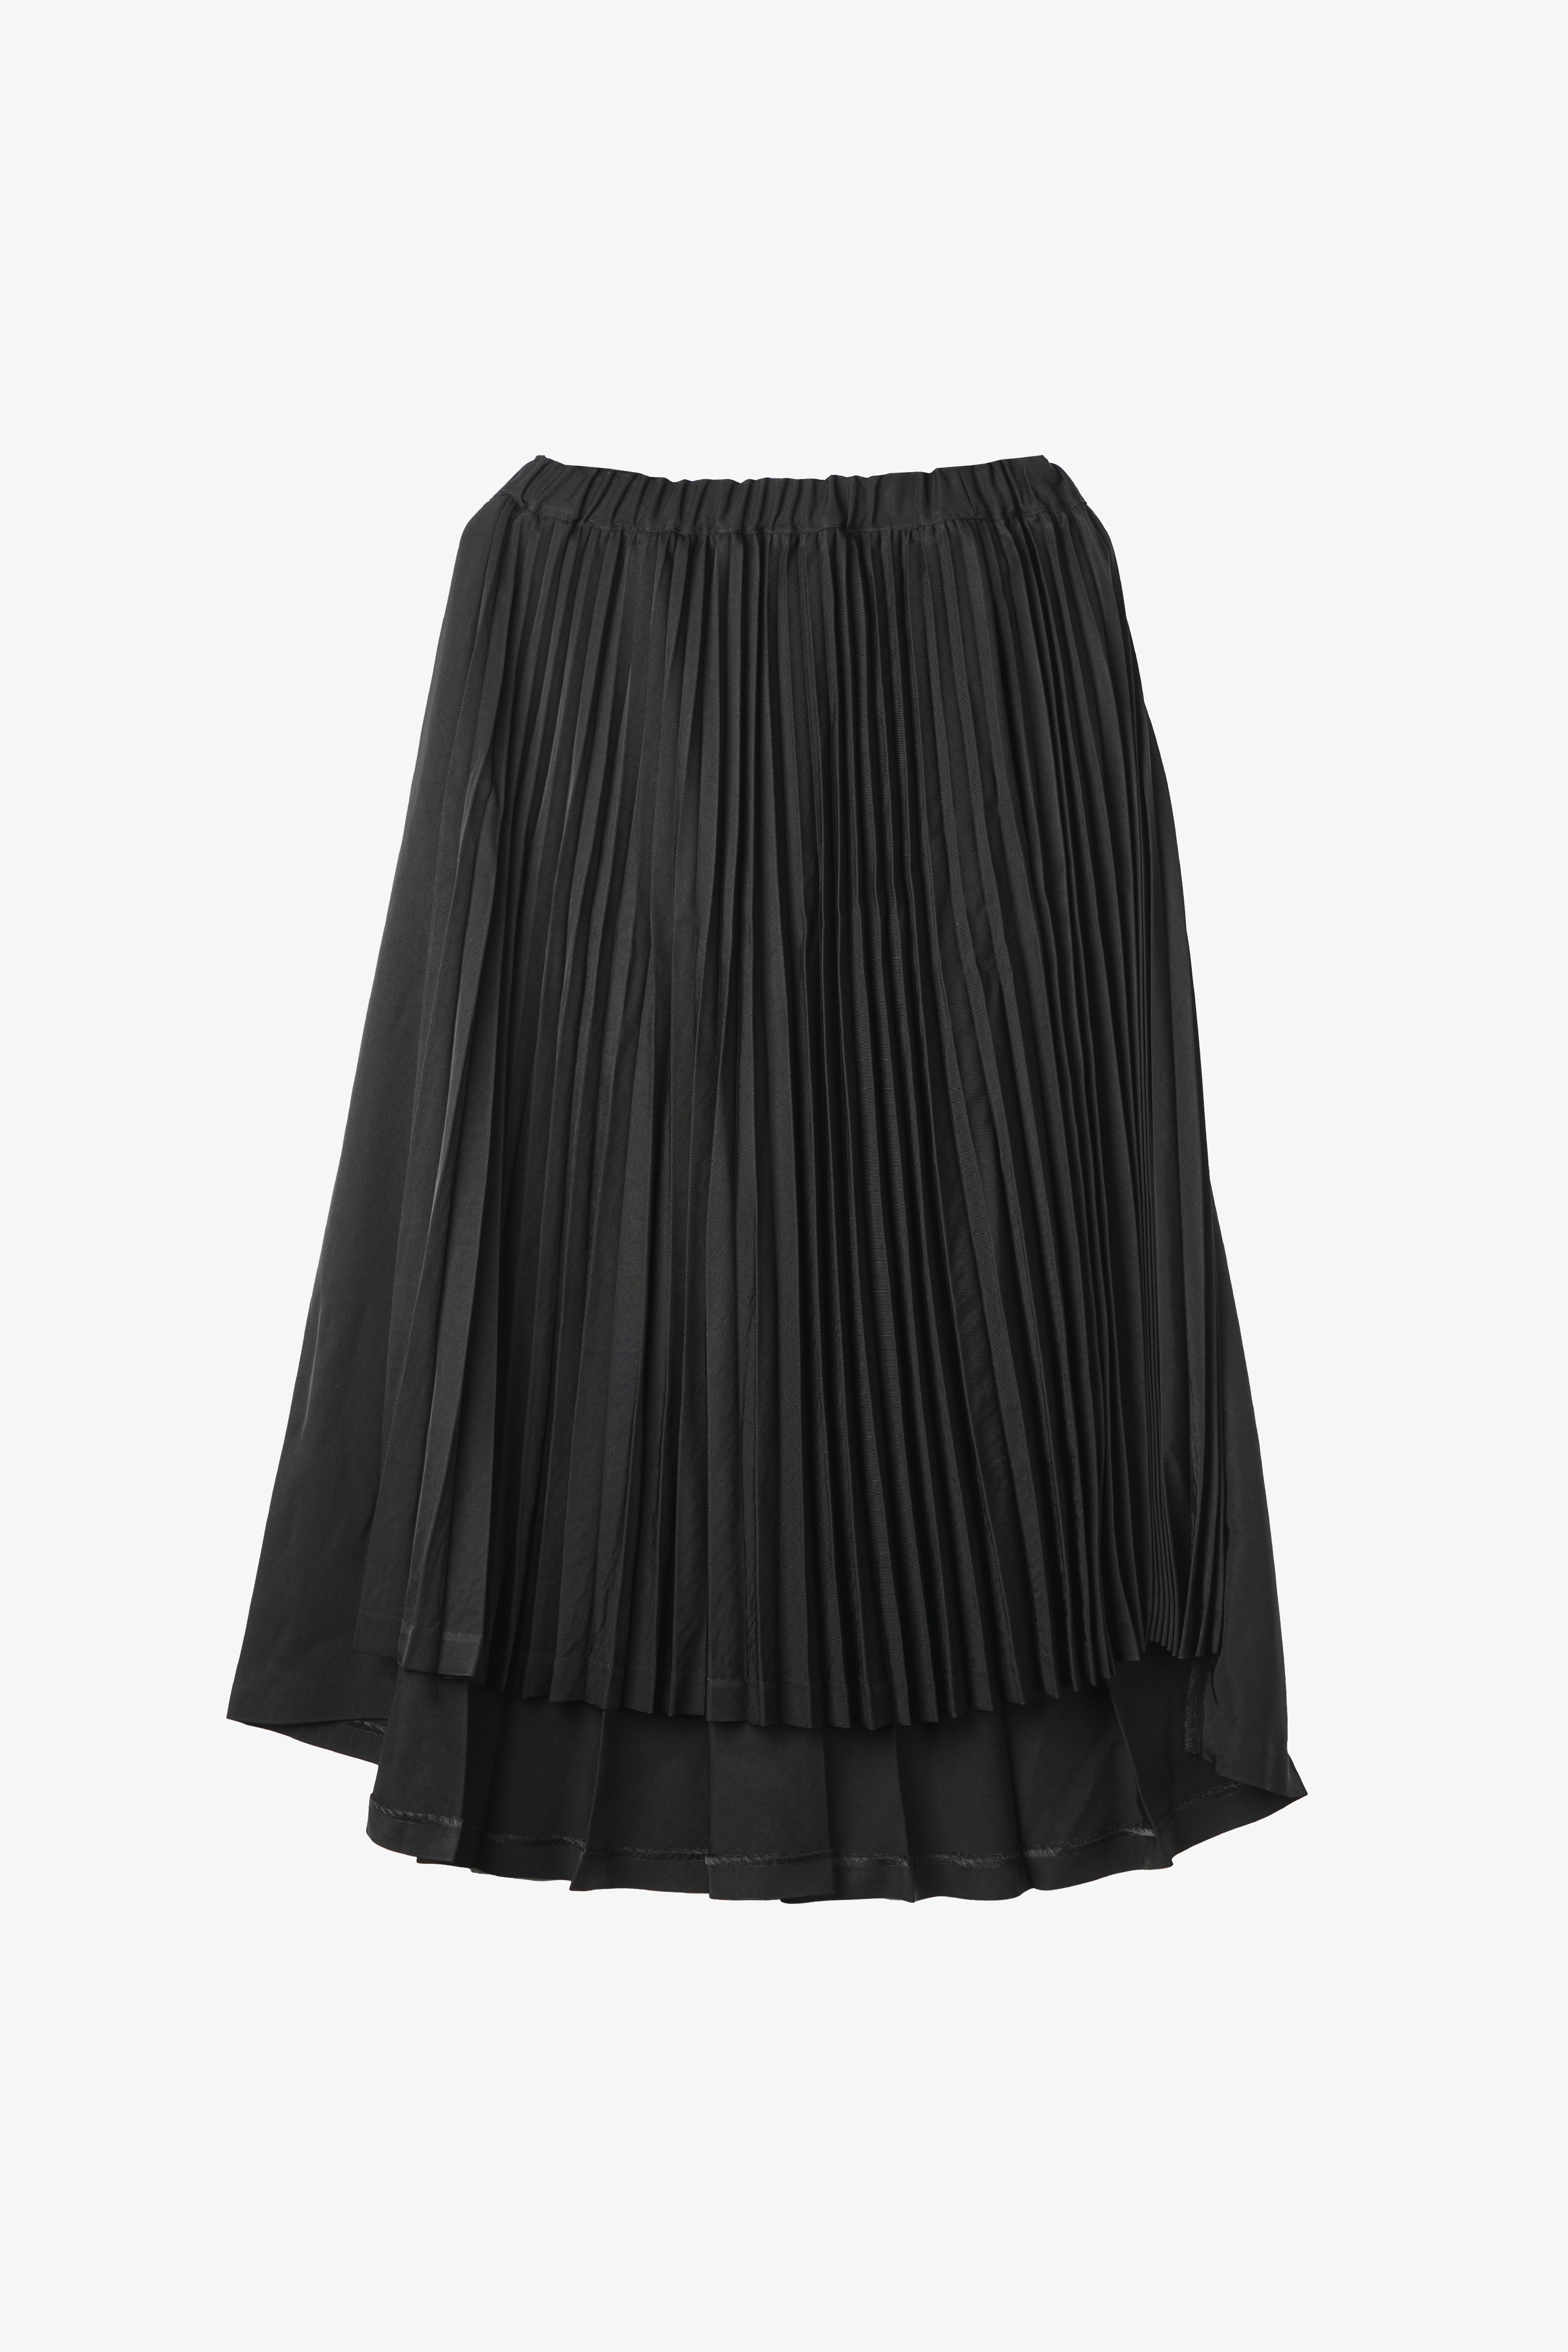 Selectshop FRAME - COMME DES GARÇONS BLACK Skirt Bottoms Dubai